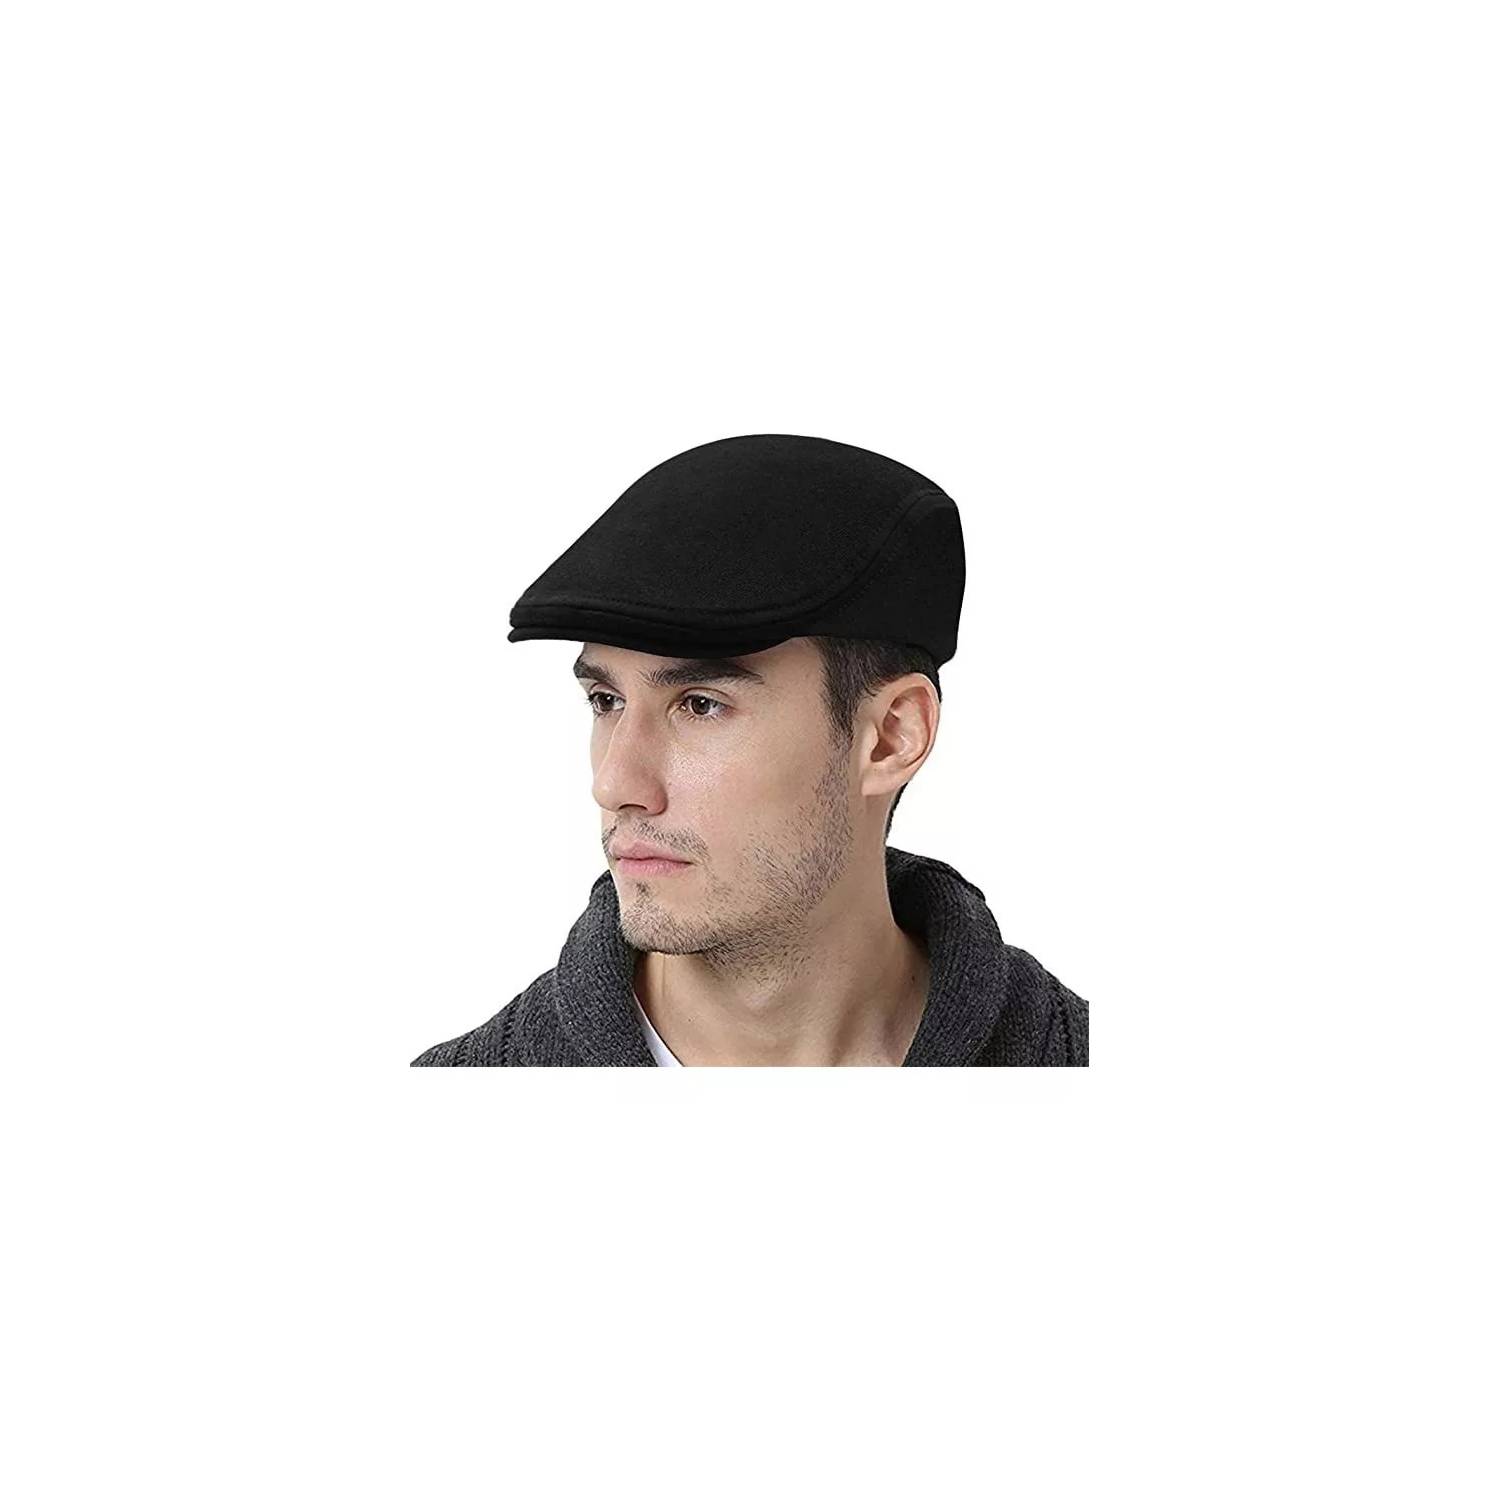 Gorra negra de Newsboy, sombrero de invierno para hombre, gorra